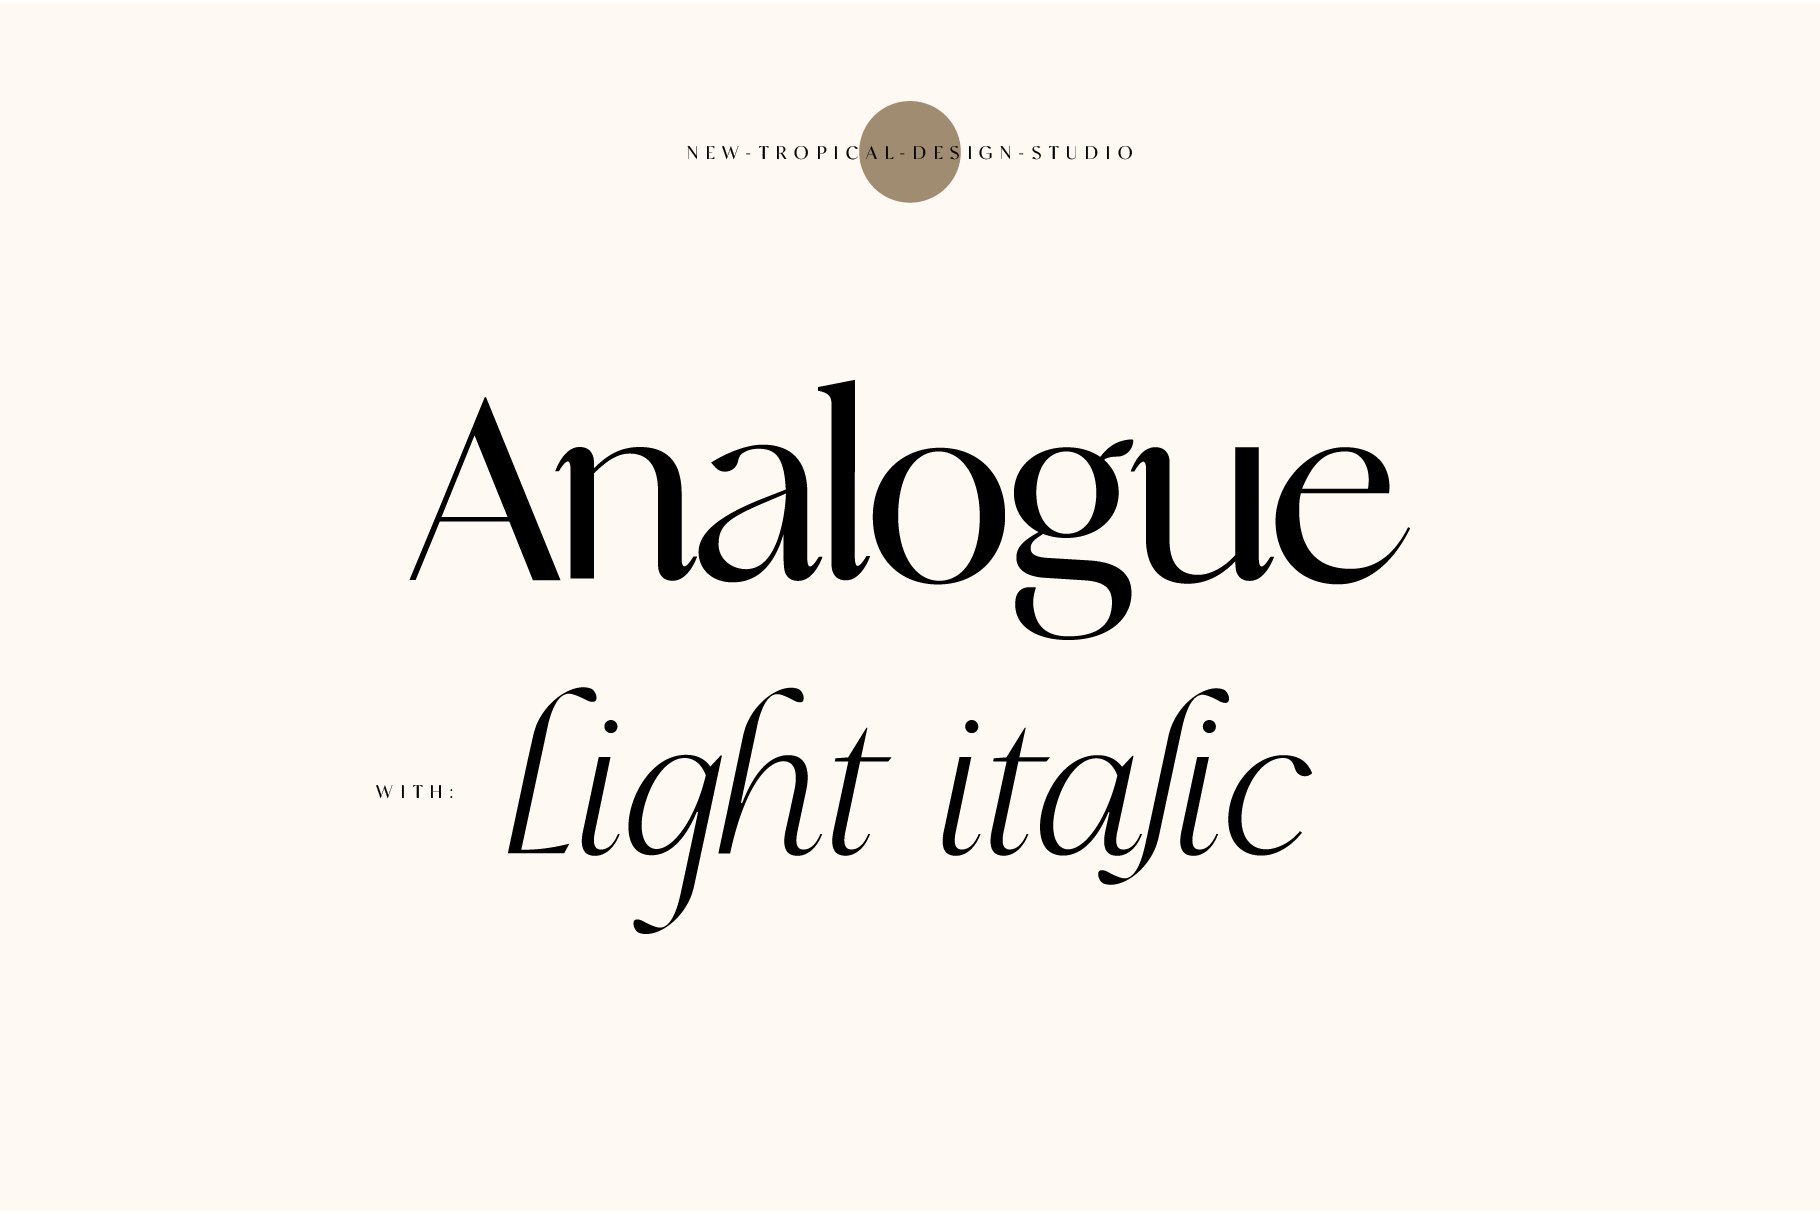 Analogue - Stylish Modern font cover image.